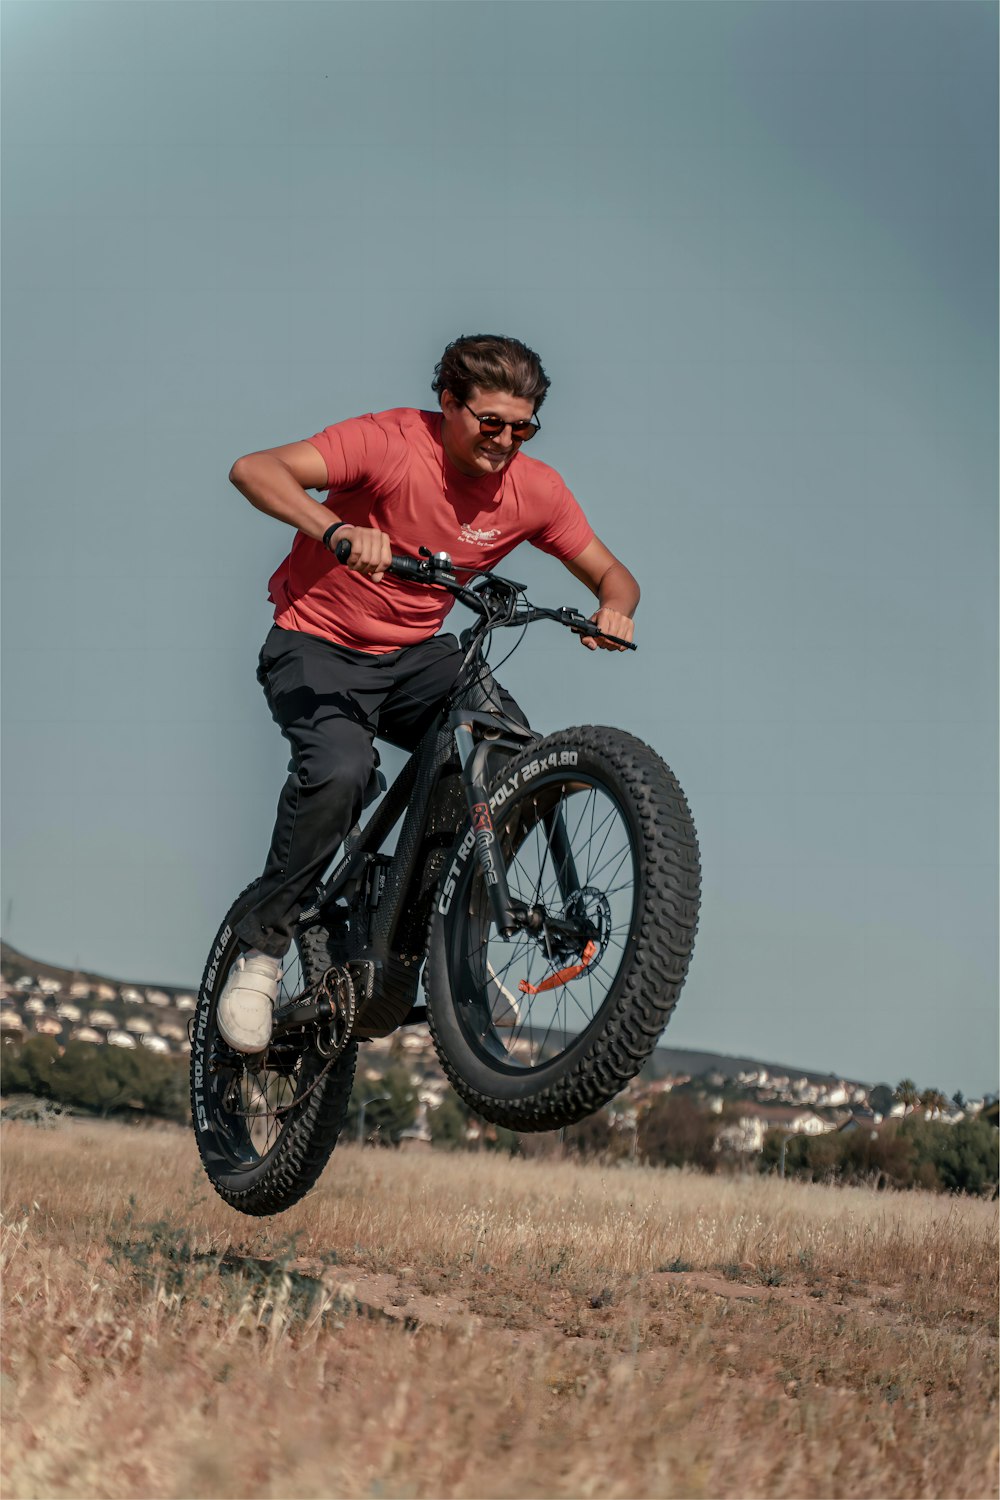 a man riding a dirt bike through a dry grass field